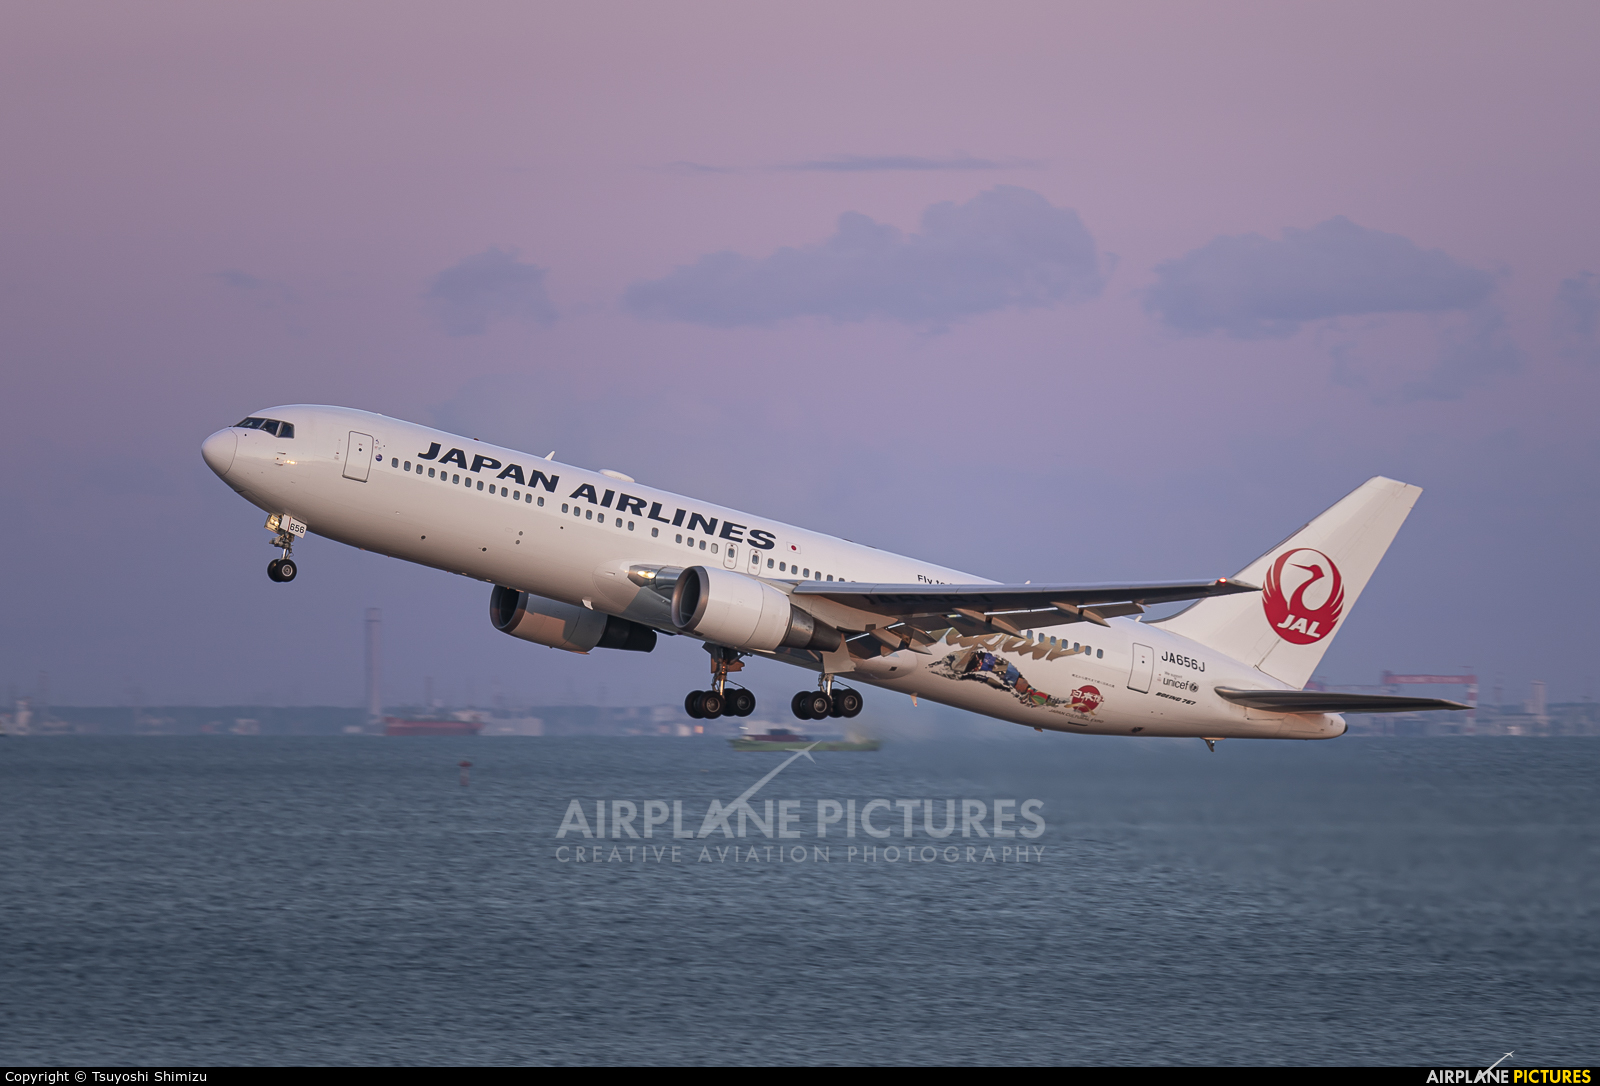 JAL - Japan Airlines JA656J aircraft at Tokyo - Haneda Intl